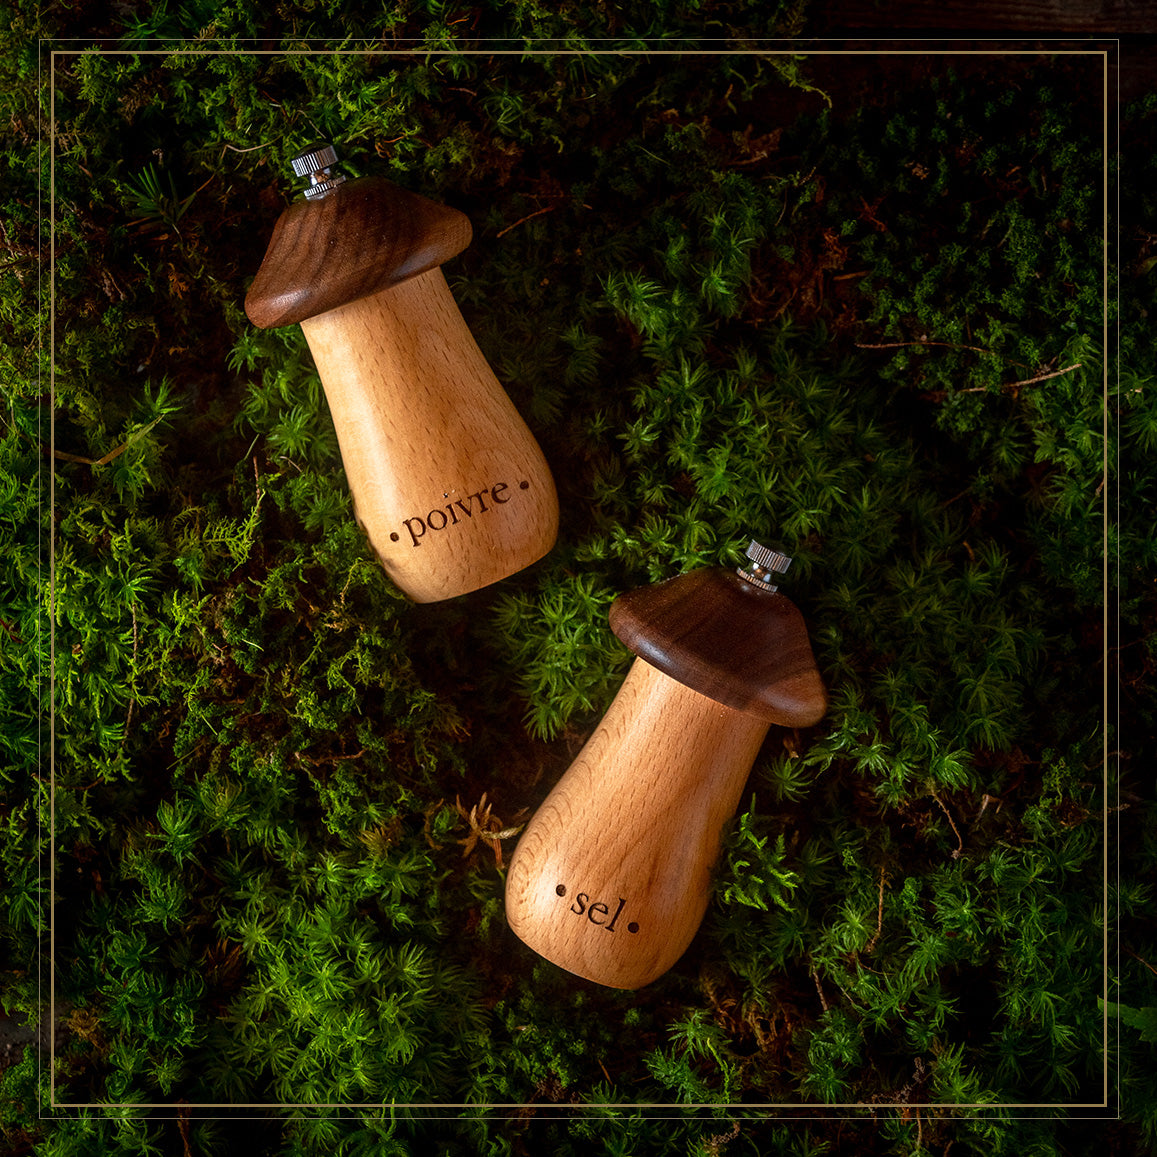 Salt &amp; pepper grinder in mushrooms shape